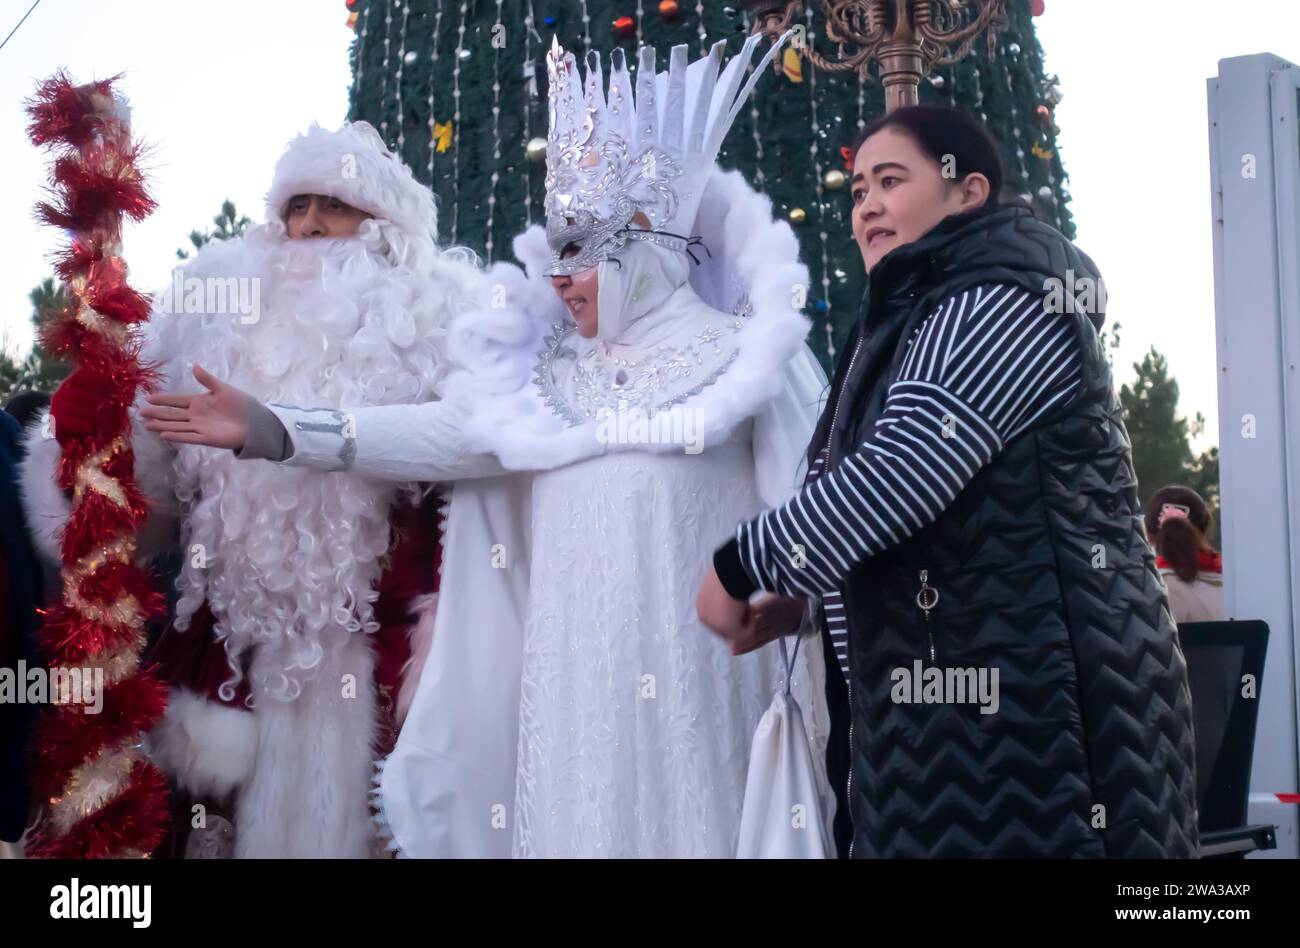 Nouvel an celebrationsat Kuk saroy Square Samarkand Ouzbékistan. Père Frost- Père Noël et Snegurochka, dame des neiges, costumes prenant la photo Banque D'Images